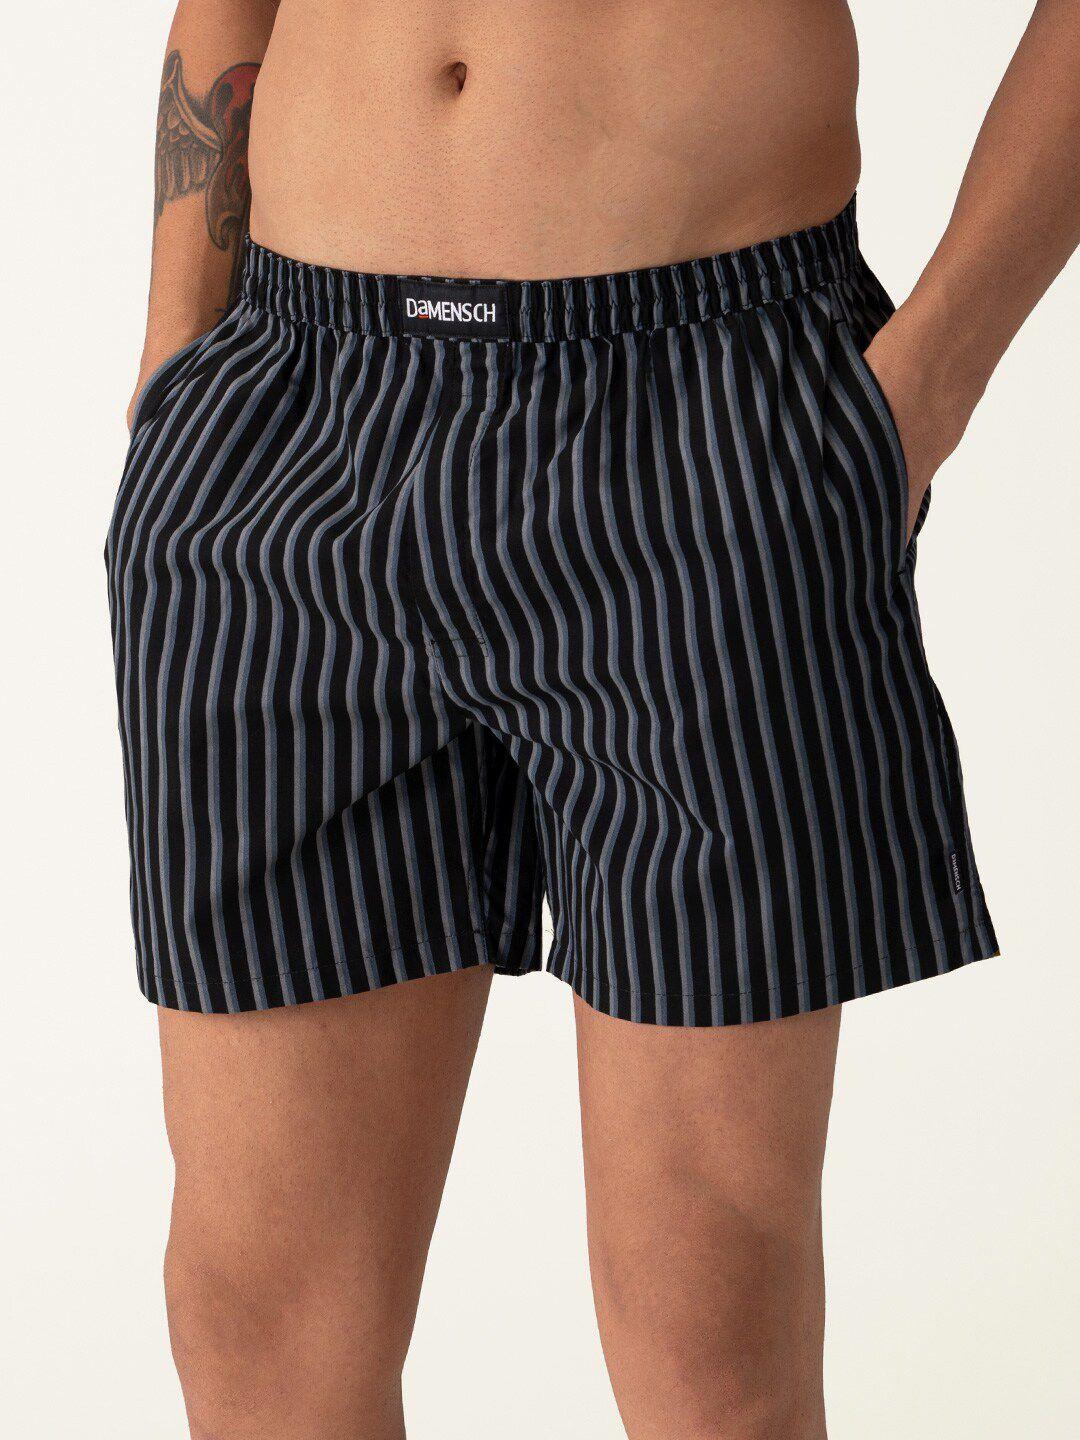 damensch men striped ultra-light cotton regular fit boxer shorts dam-stp-lbx-ntb